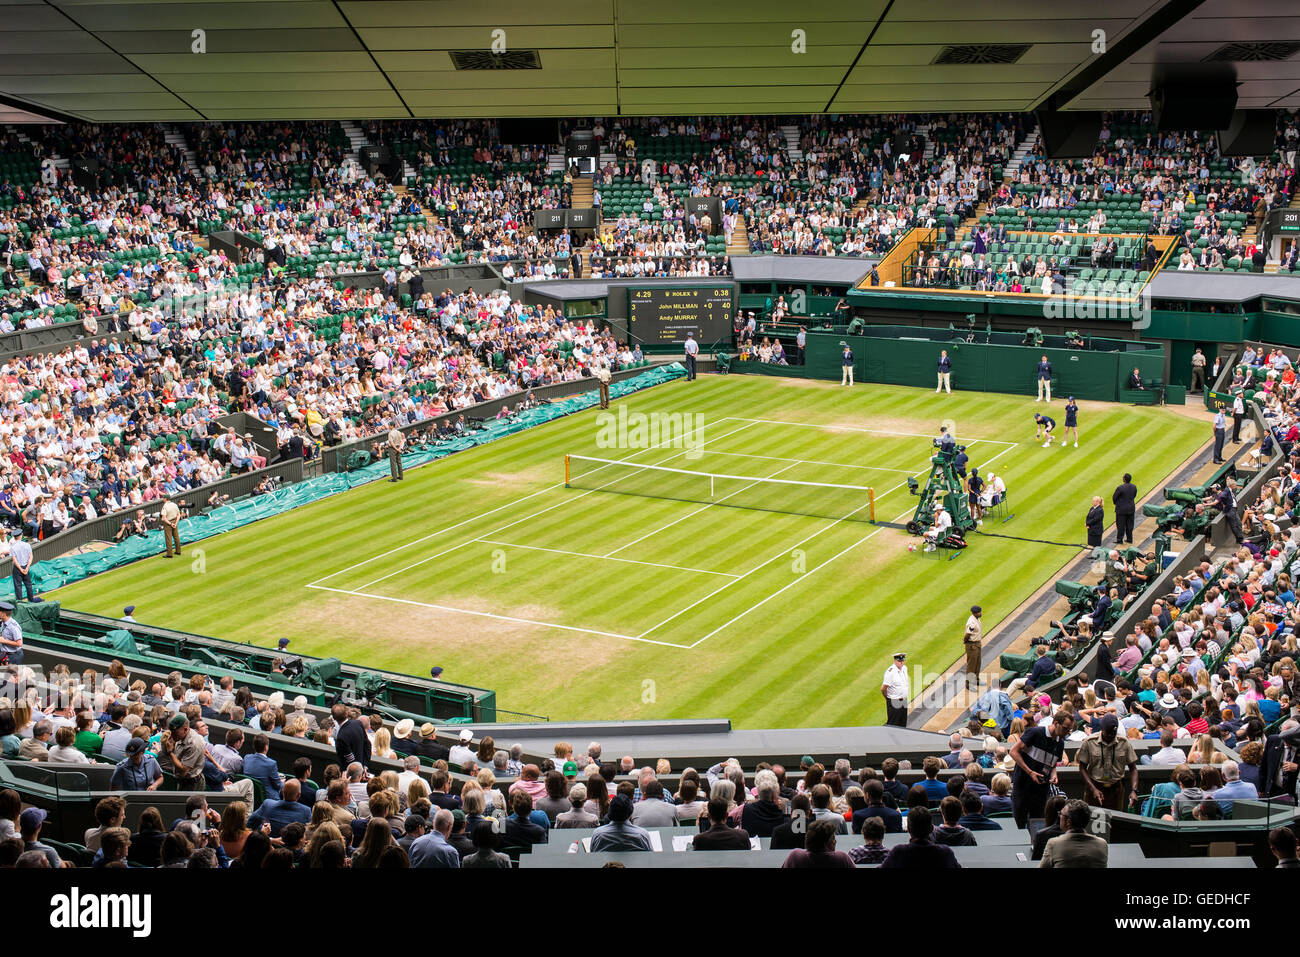 Blick auf den Center Court voller Zuschauer, die ein Spiel in Wimbledon All England Lawn Tennis Club Meisterschaften. Wimbledon. Stockfoto